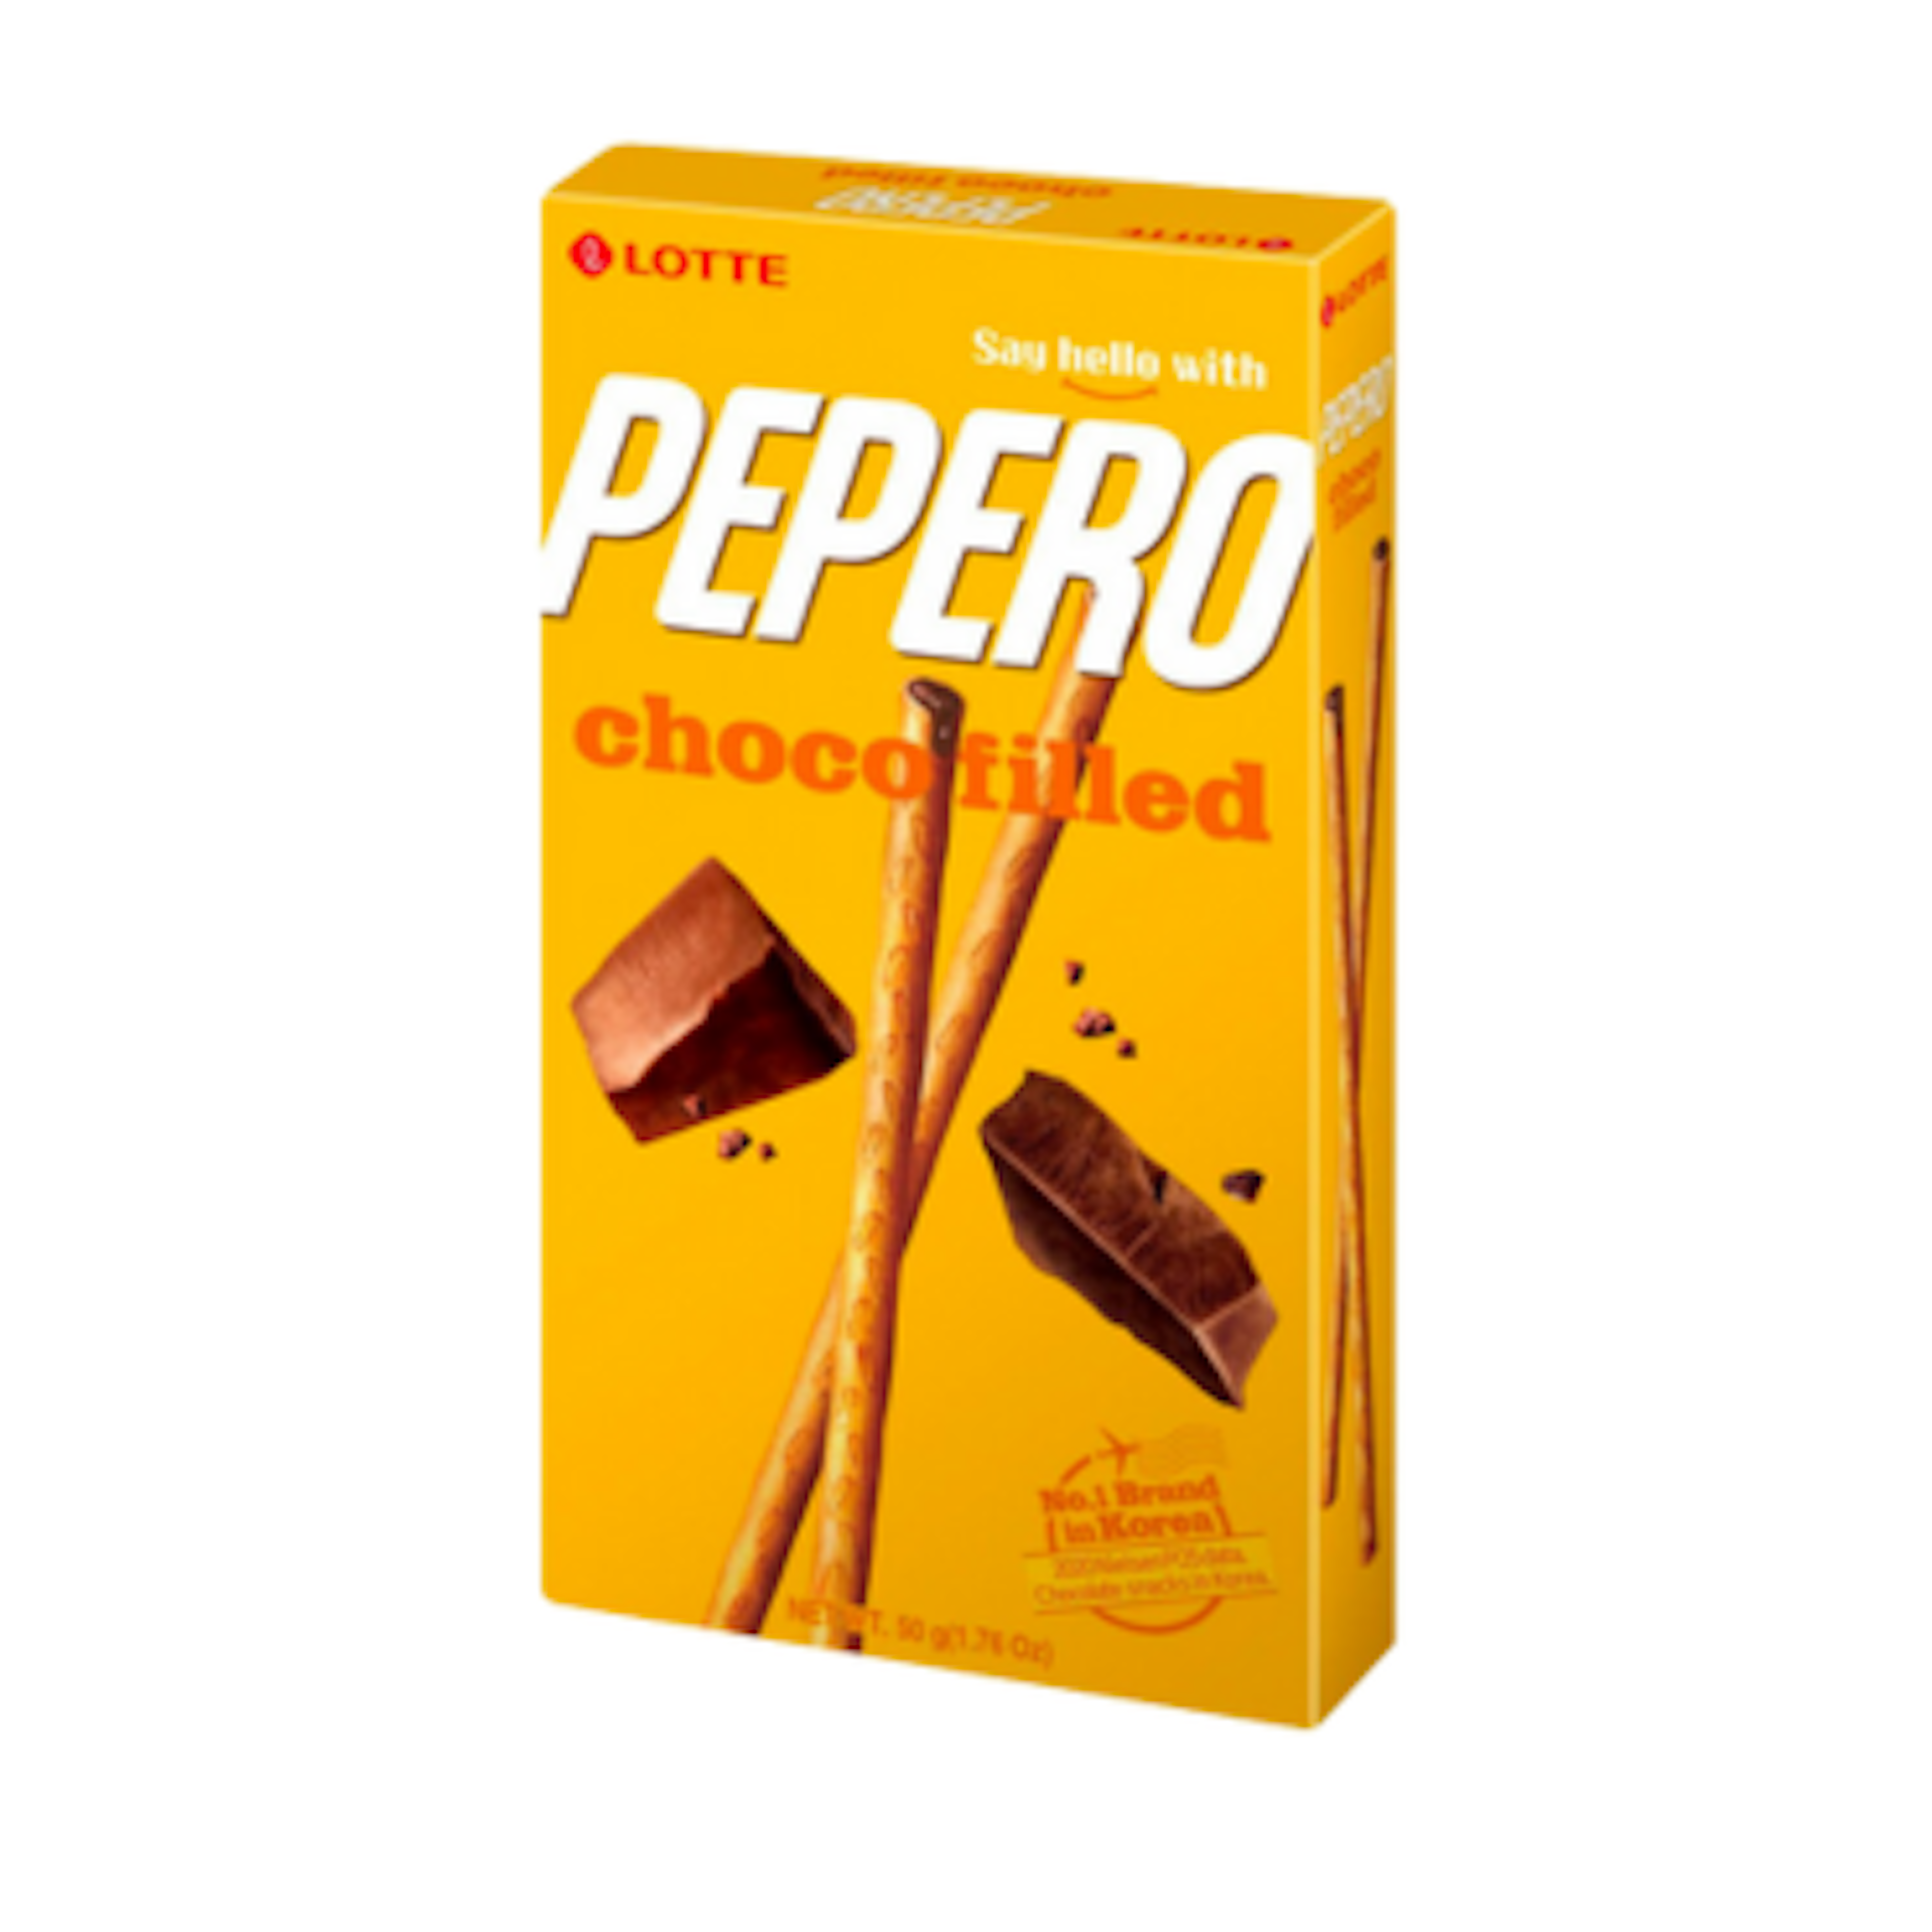 Lotte Pepero Nude Choco filled - Leckere Schokoladen gefüllte Sticks, 45g